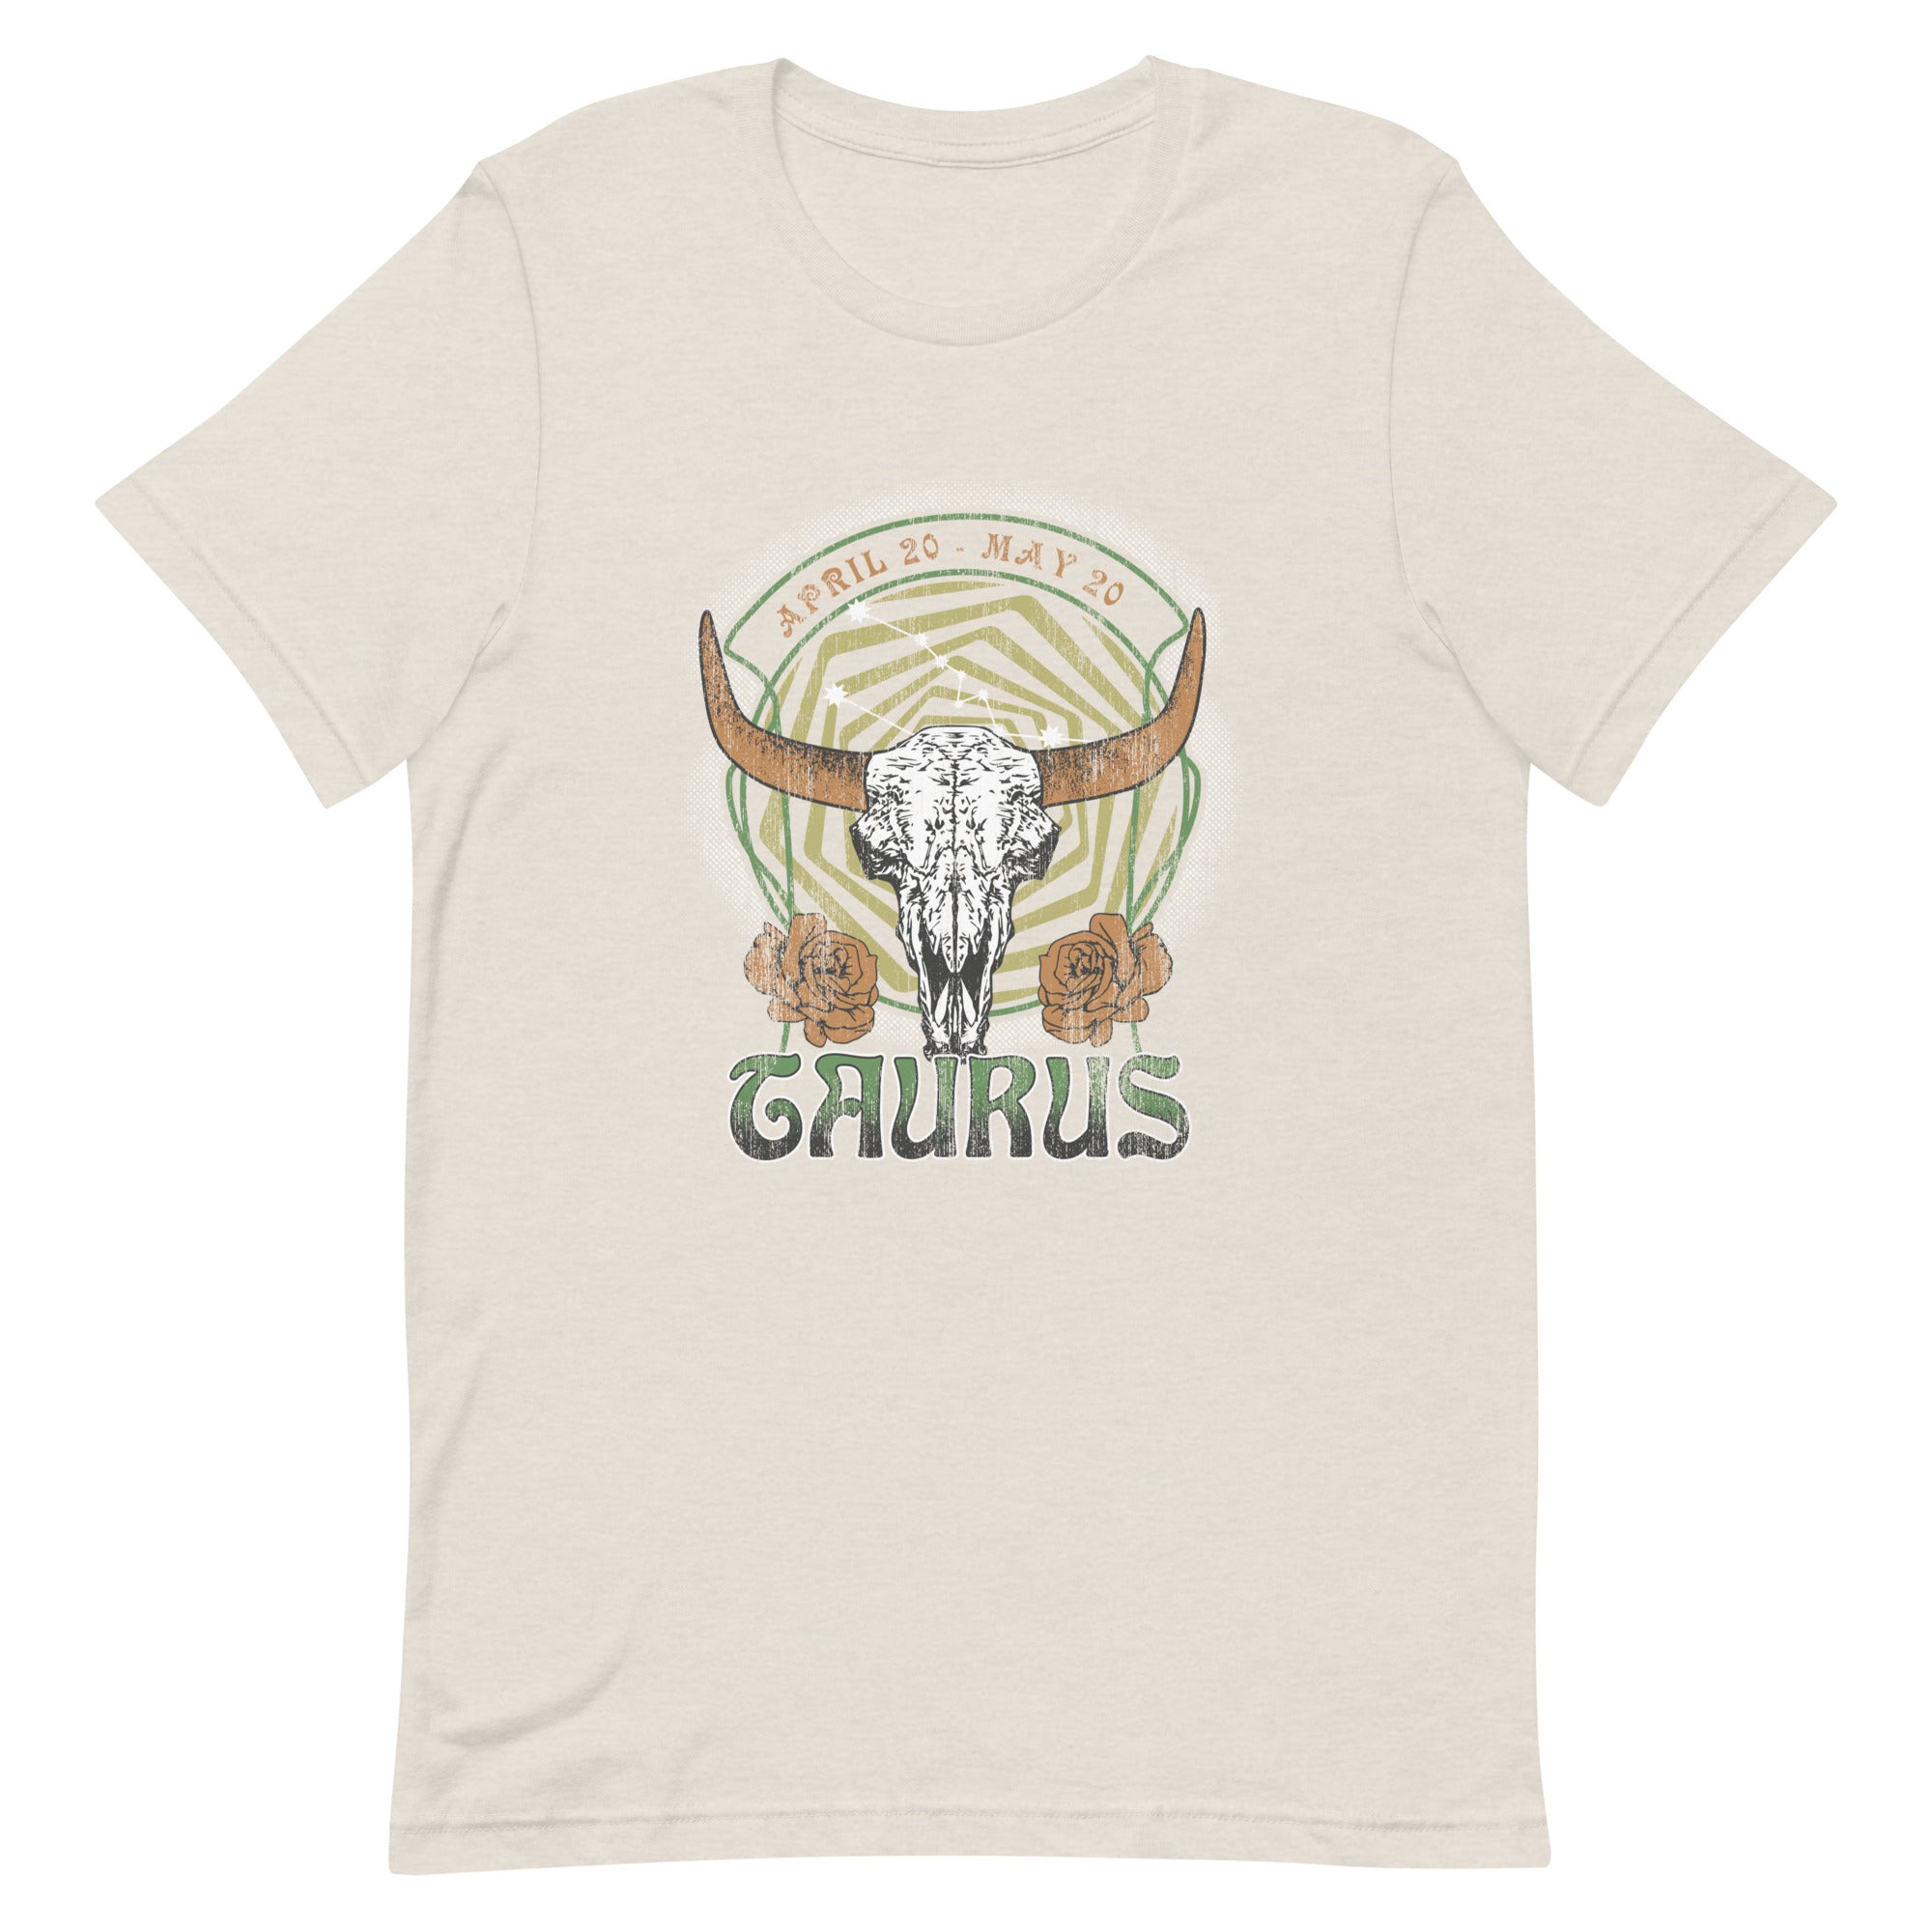 Taurus Band T-Shirt Inspired Graphic Tee